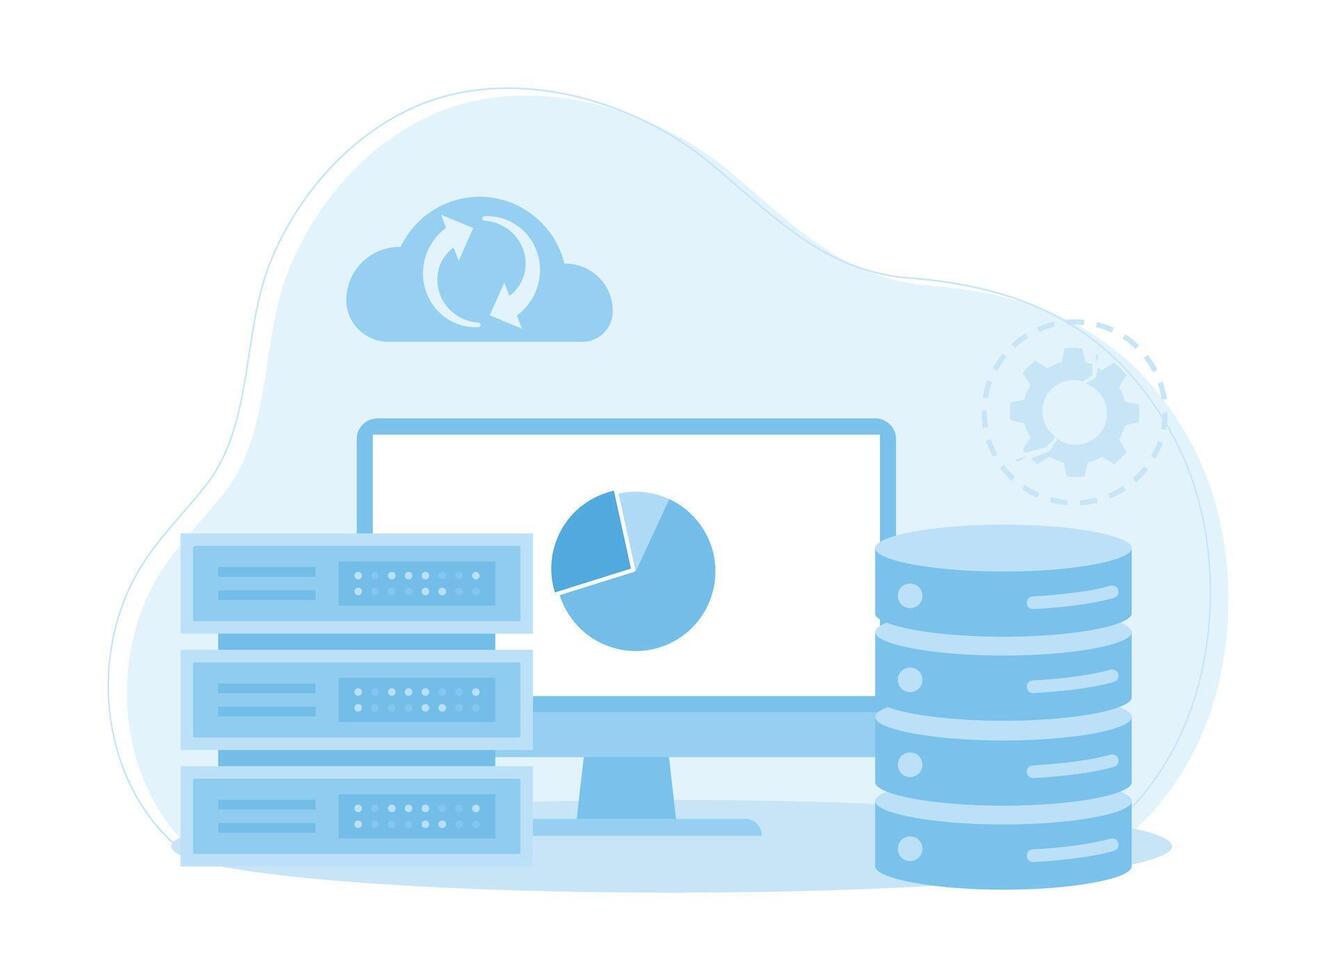 hosting backup and management big data concept flat illustration vector